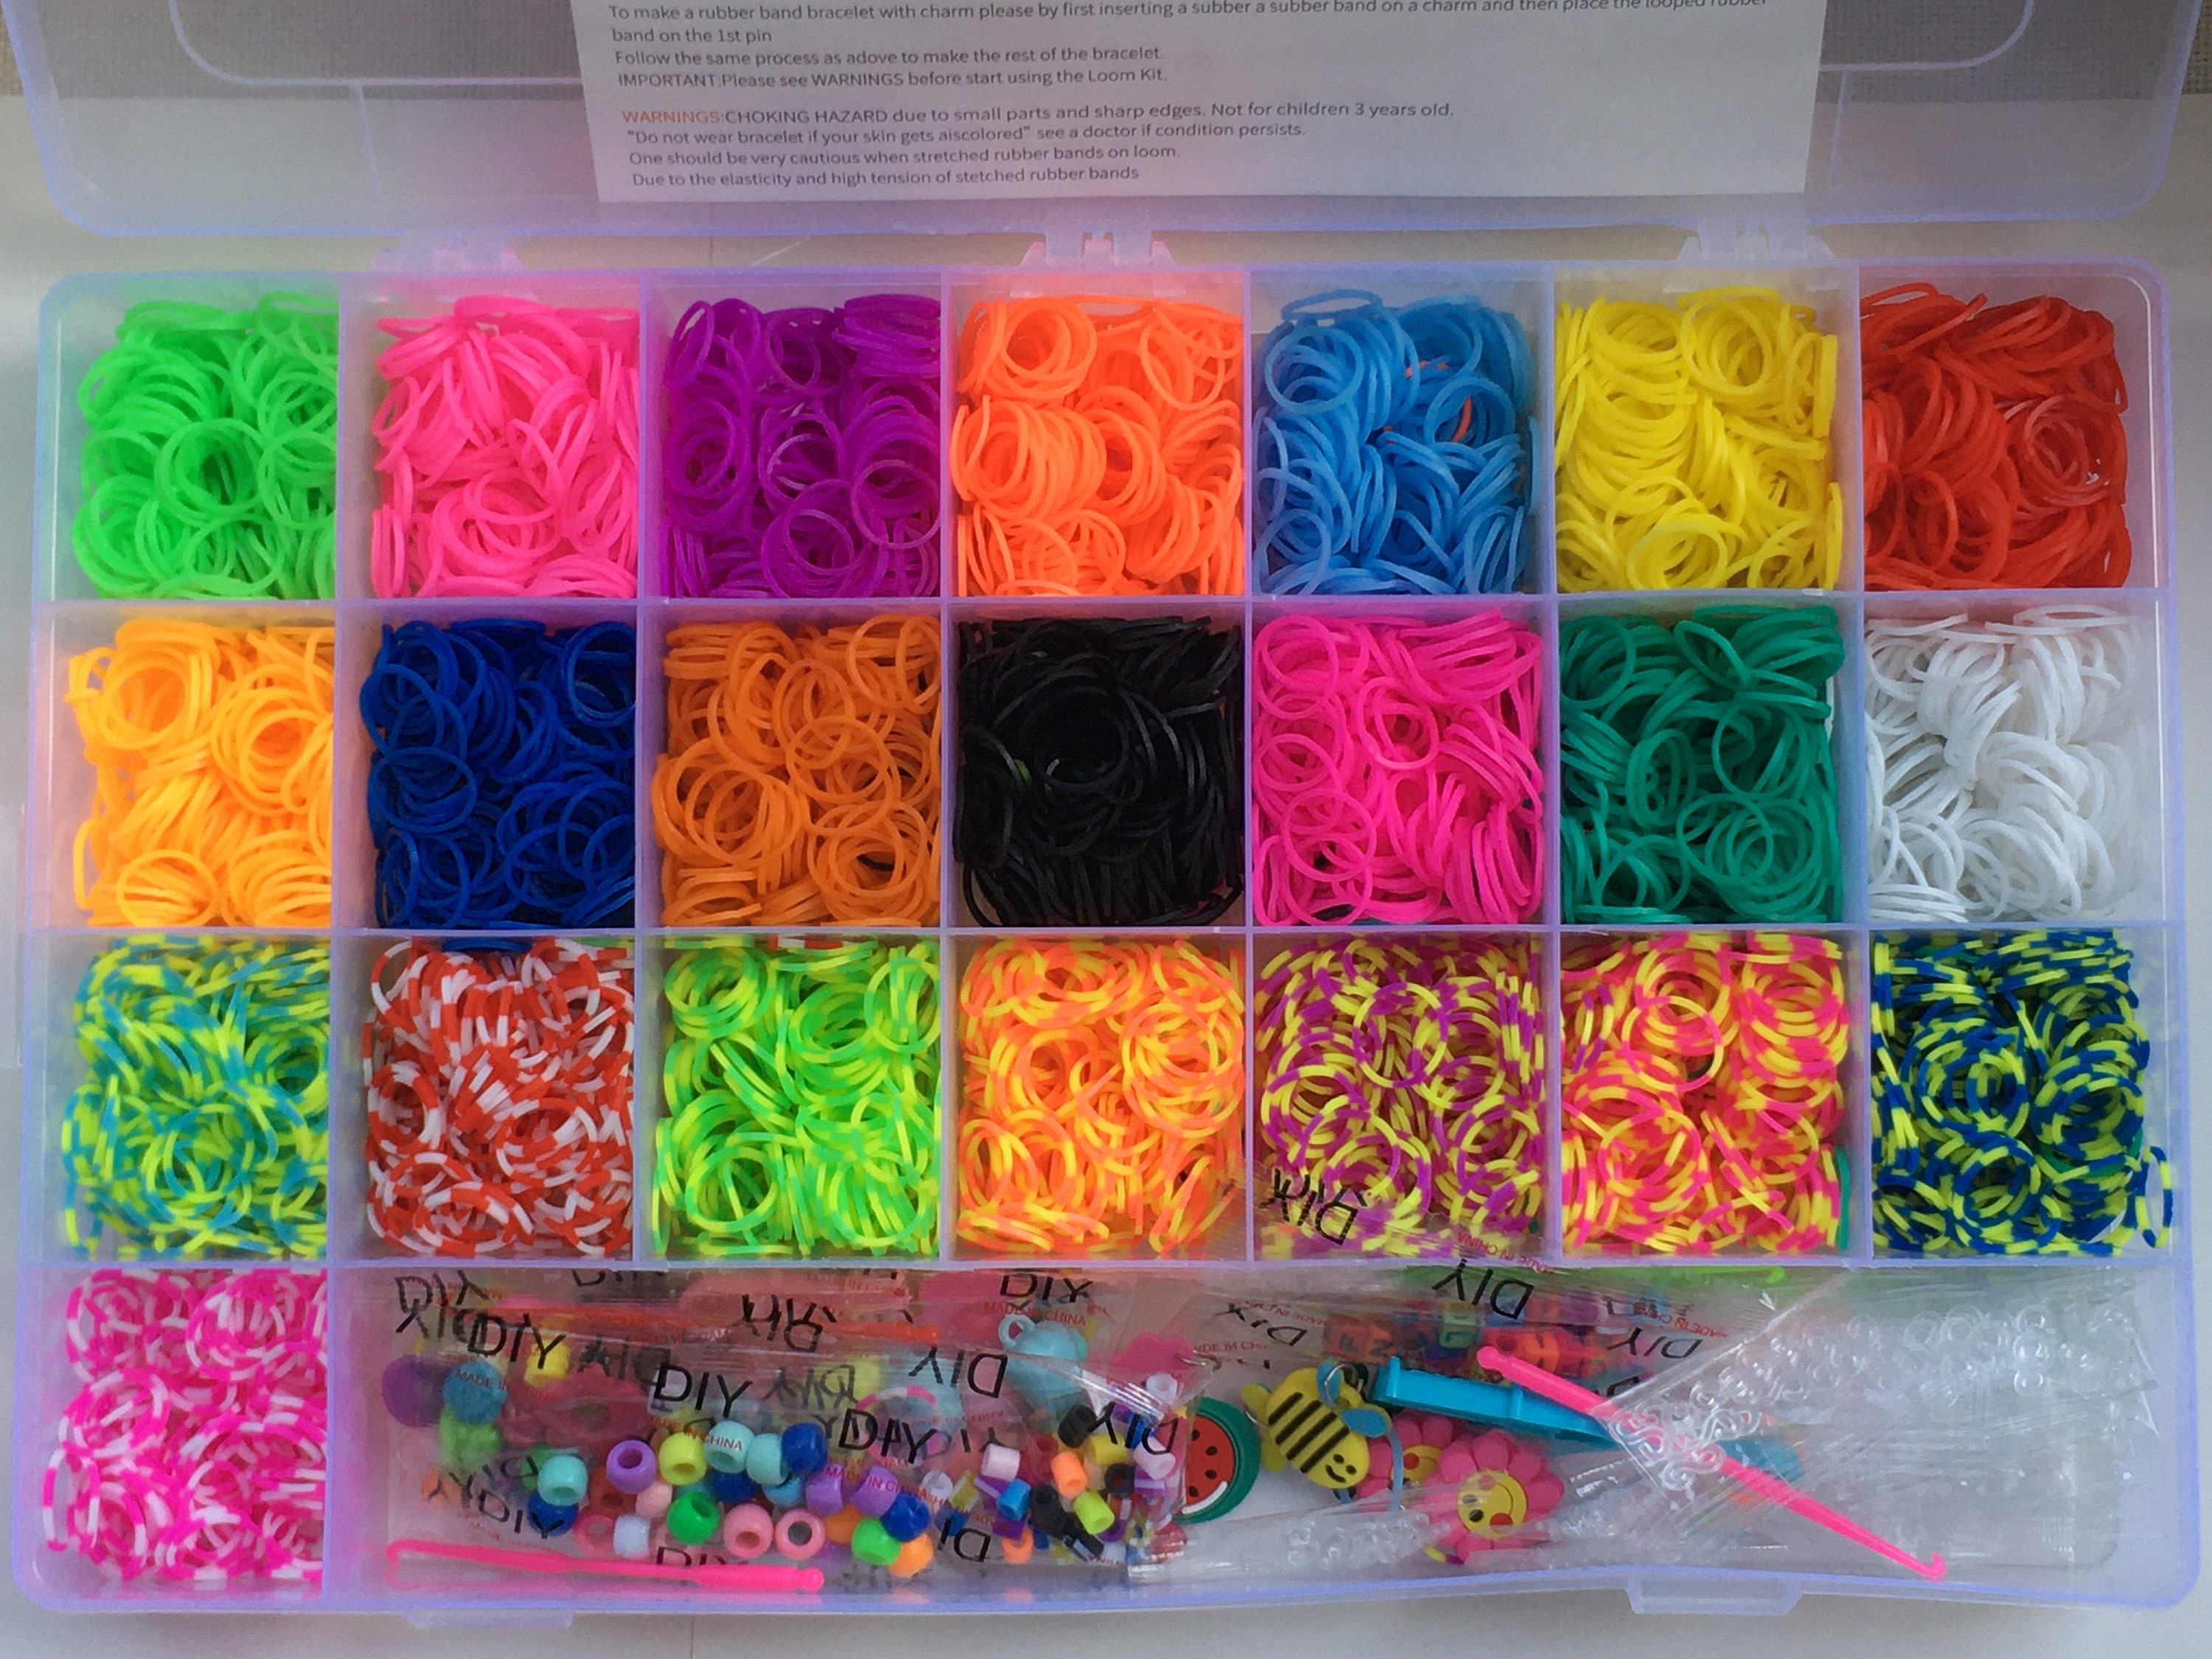 600-1500pcs+ Colorful Loom Bands Set Candy Color Bracelet Making Kit DIY Rubber  Band Woven Bracelet Kit Girls Craft Toys Gifts